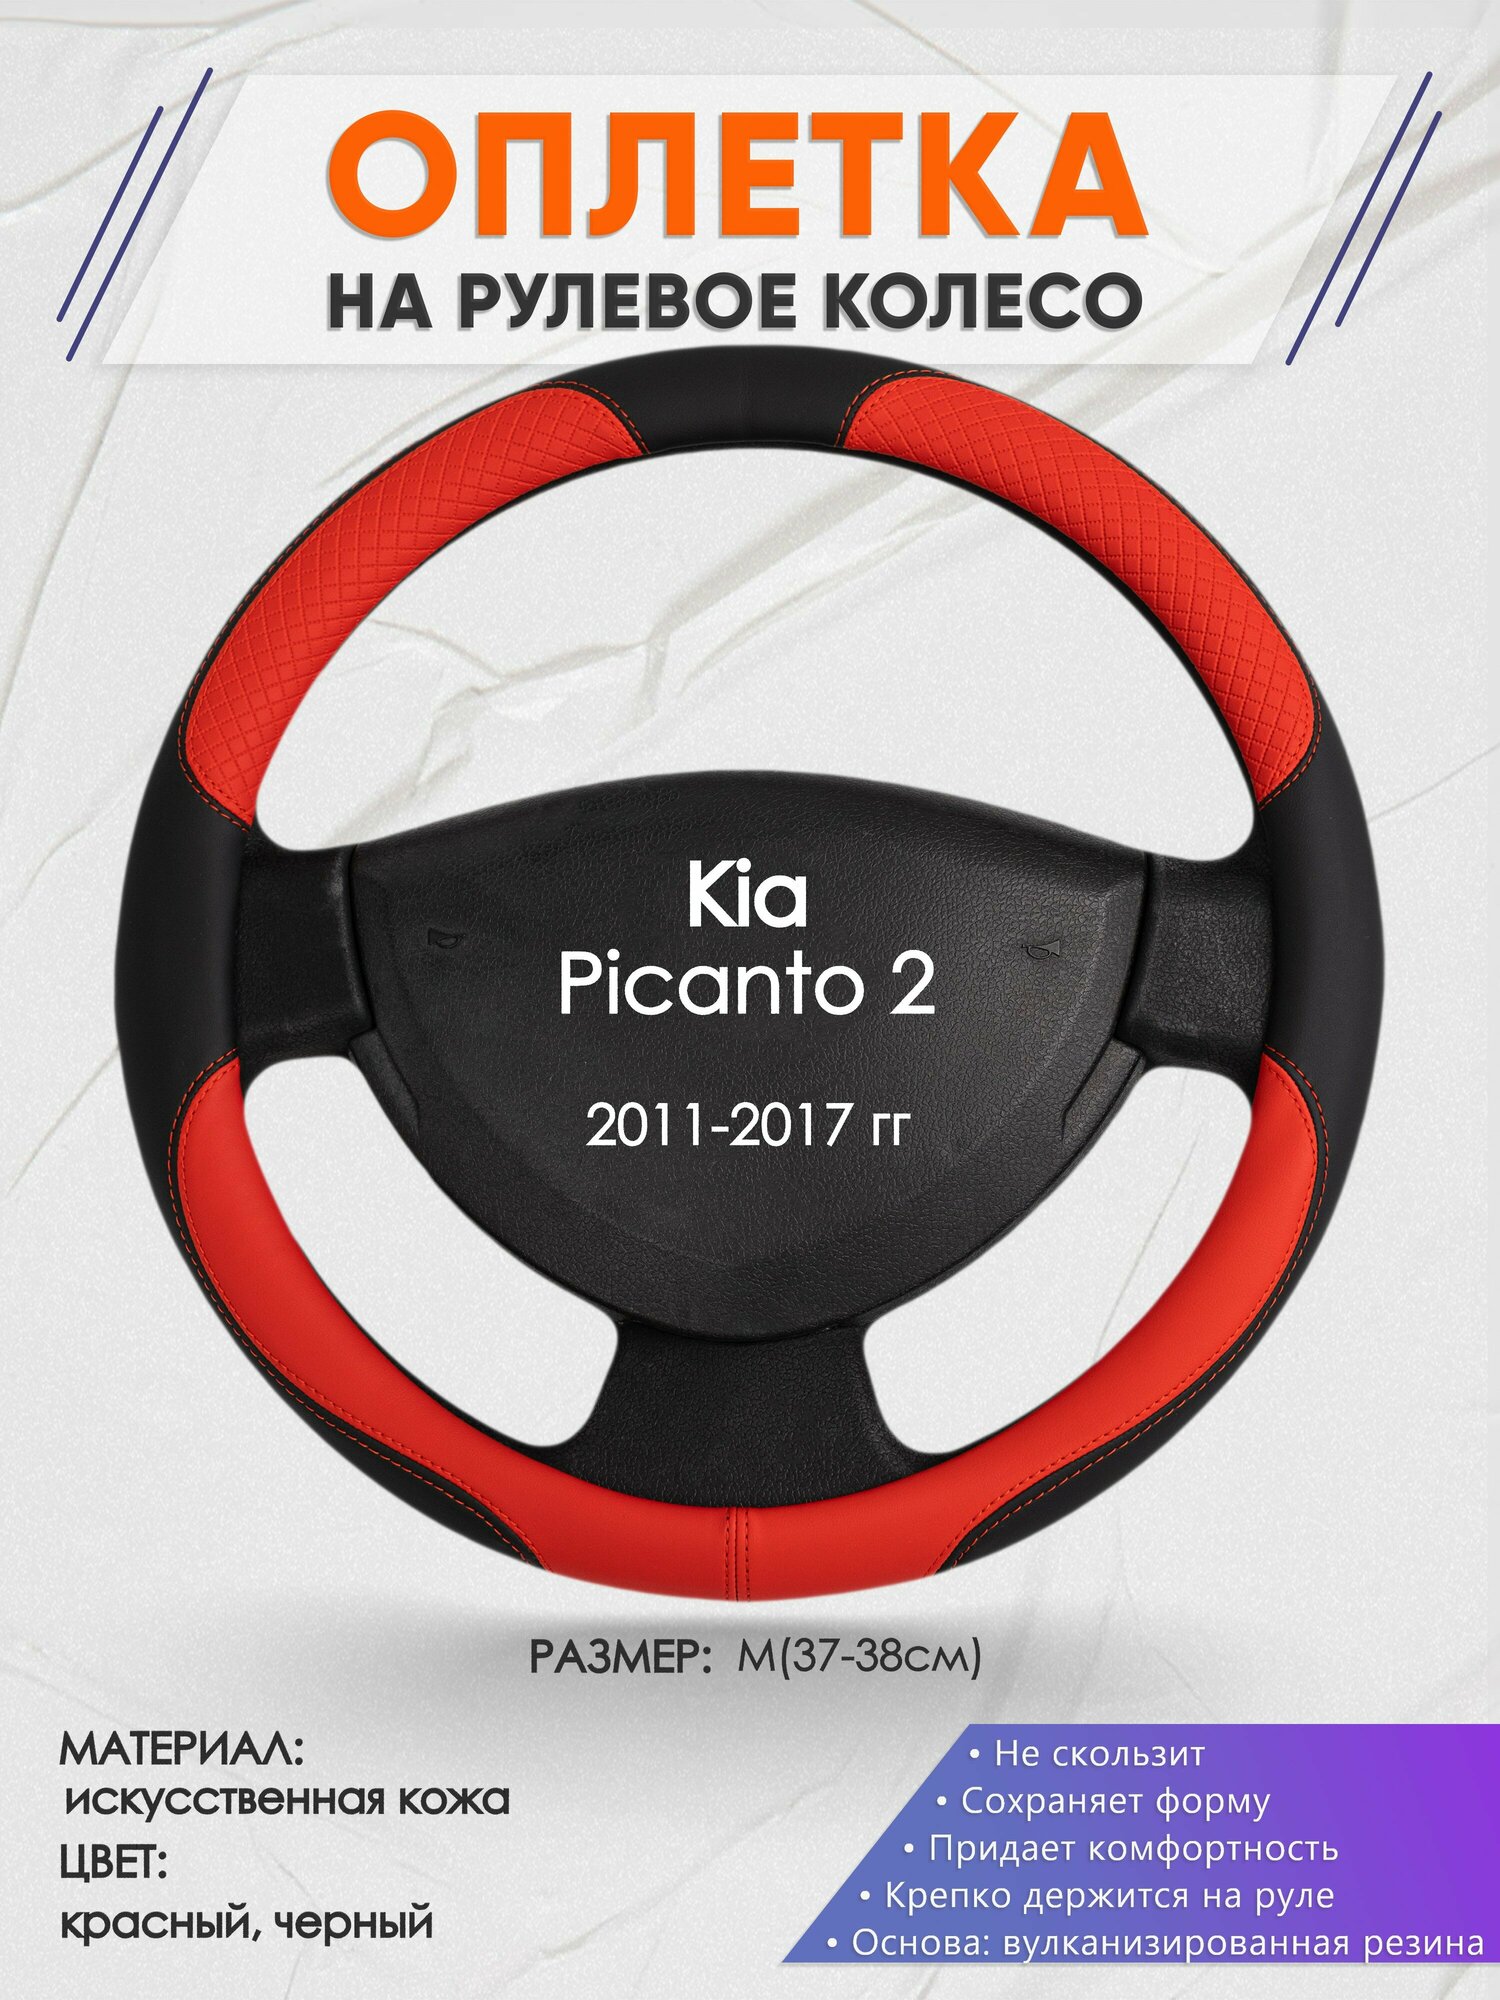 Оплетка на руль для Kia Picanto 2(Киа Пиканто 2) 2011-2017 M(37-38см) Искусственная кожа 07